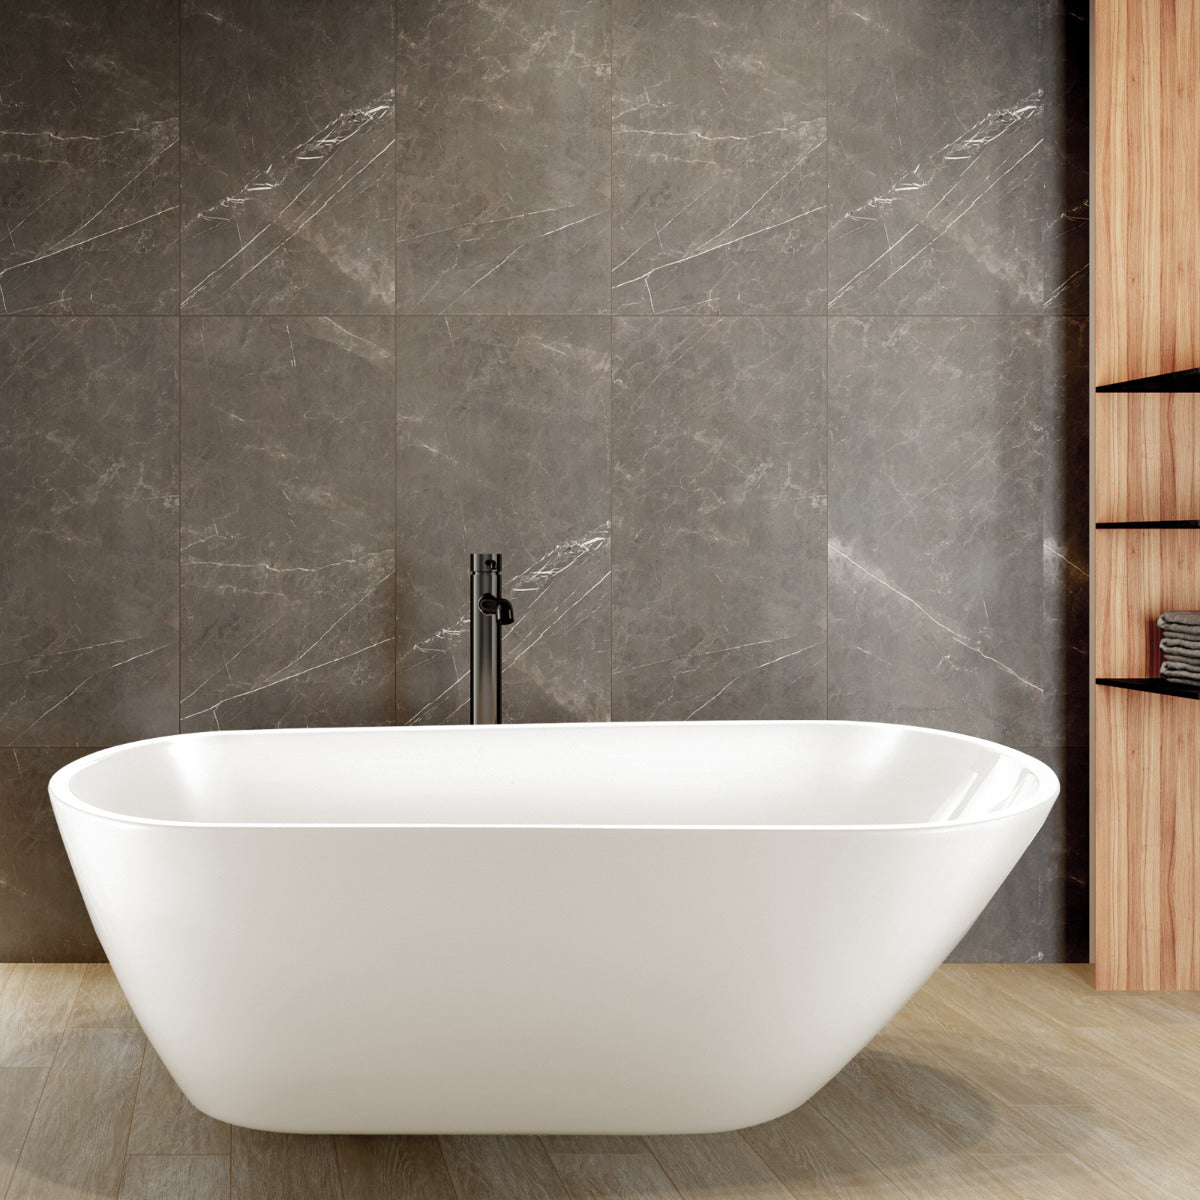 JassferryJASSFERRY Modern Design Rectangular Freestanding Bathtub Soaking Baths WhiteBathtubs